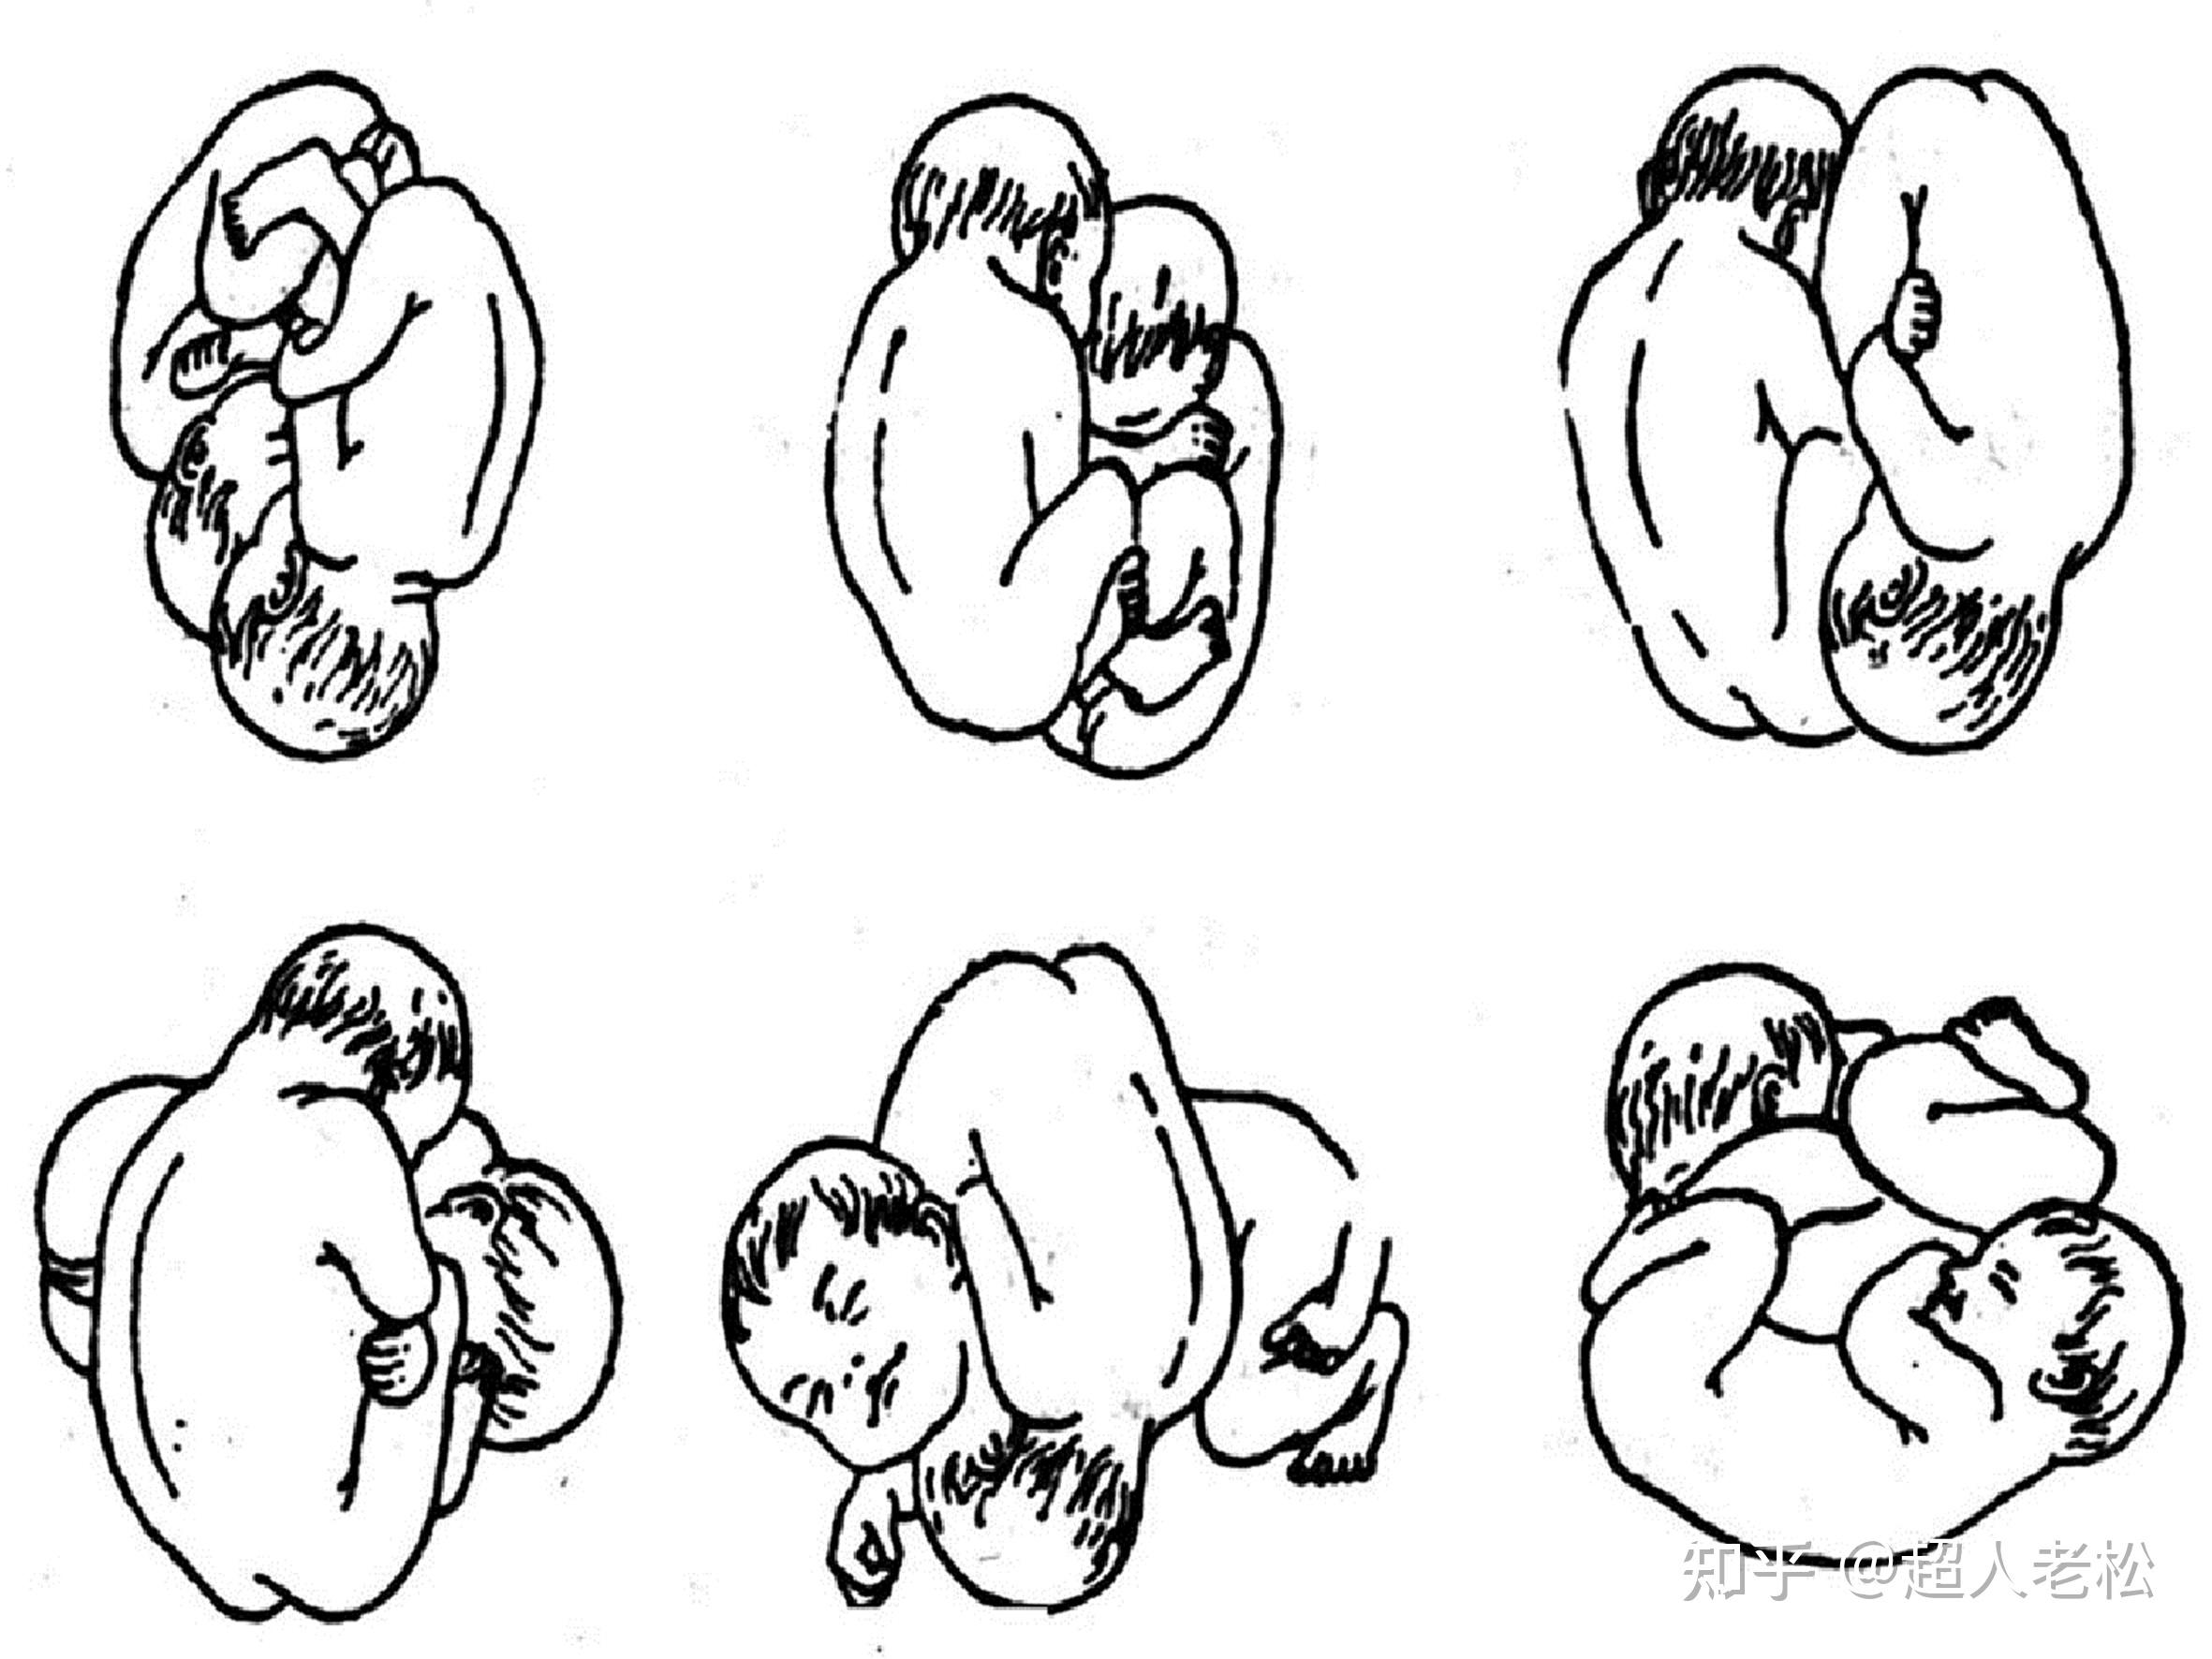 腔内的空间受限,胎儿体位常呈相对固定的胎产式,常见的胎位为纵产式